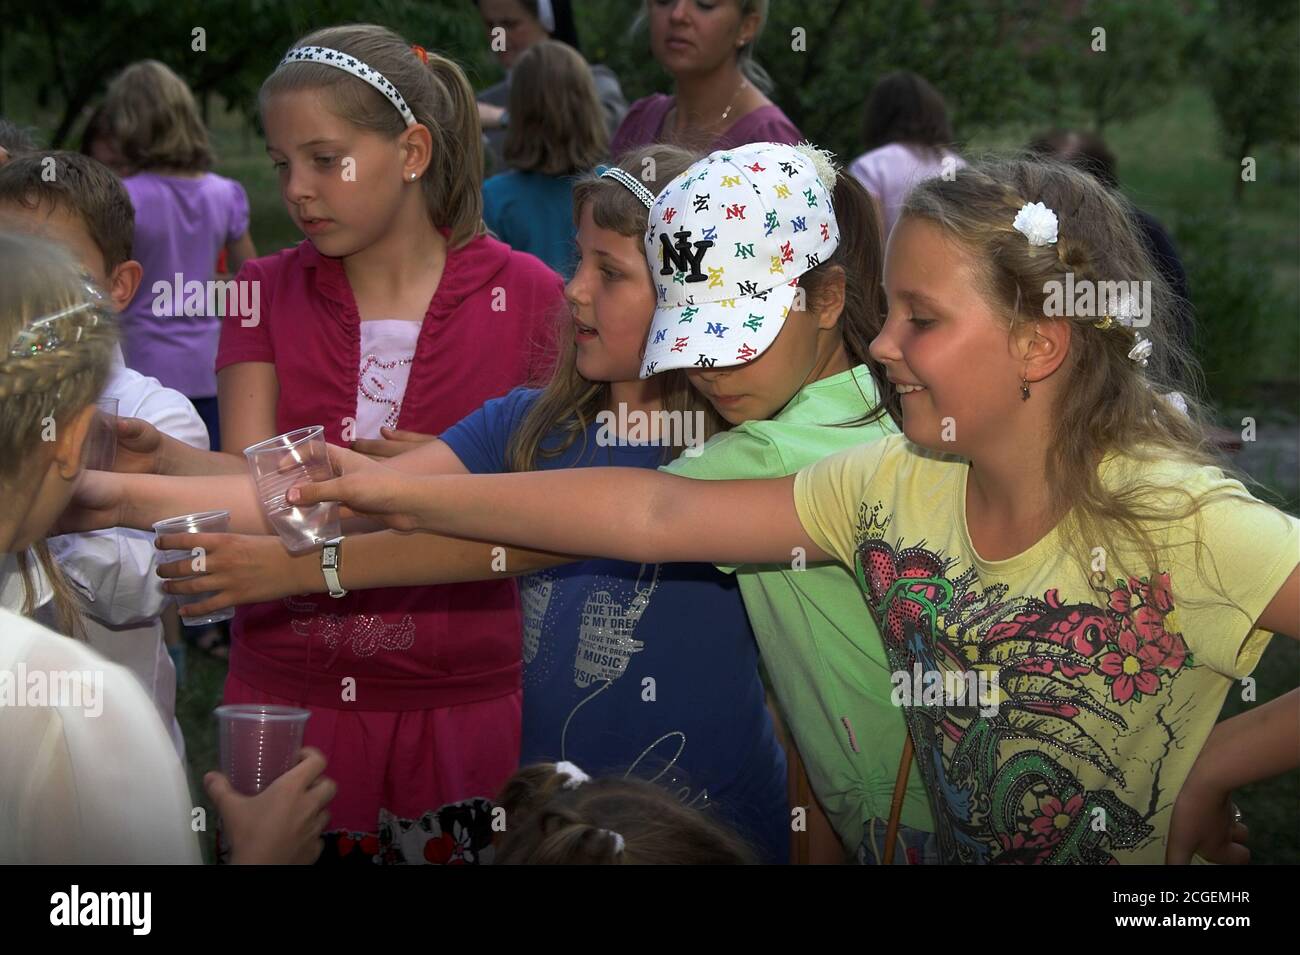 Polen Kinder bei einem Picknick halten ihre Hände mit Tassen für einen Drink aus. Kinder bei einem Picknick halten ihre Hände mit Tassen für einen Drink aus. Stockfoto